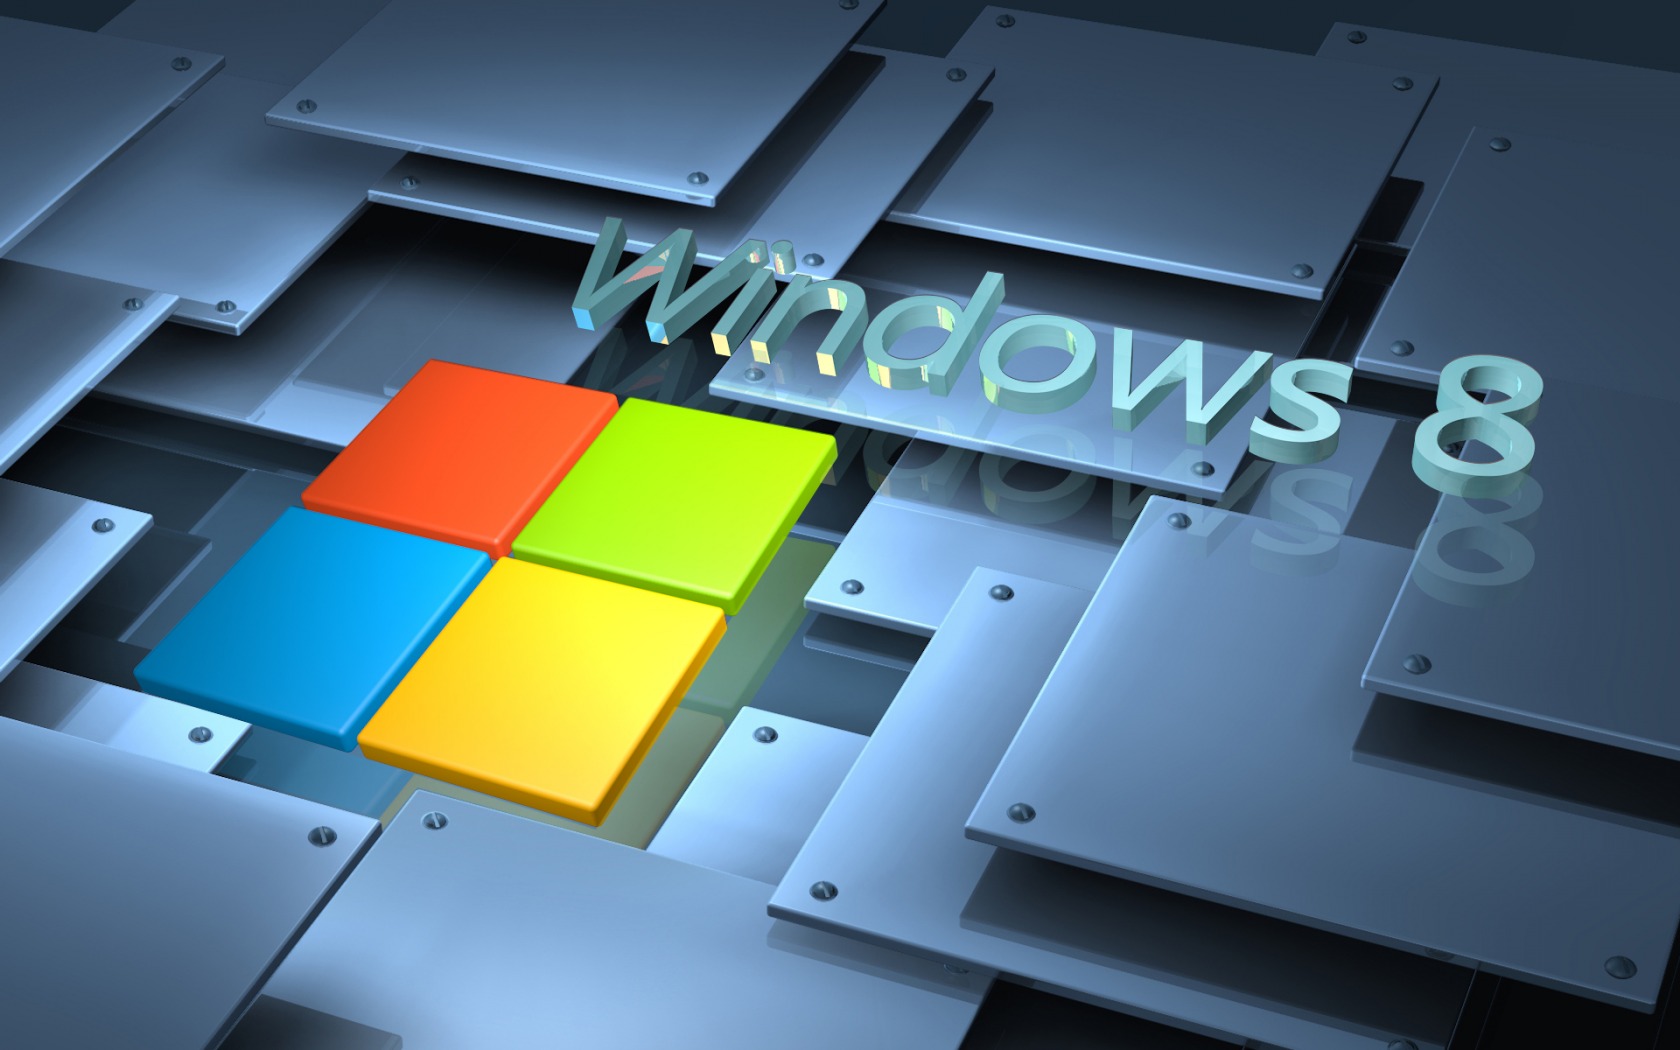 Windows 8 3D Wallpapers HD Wallpaper of Windows   hdwallpaper2013com